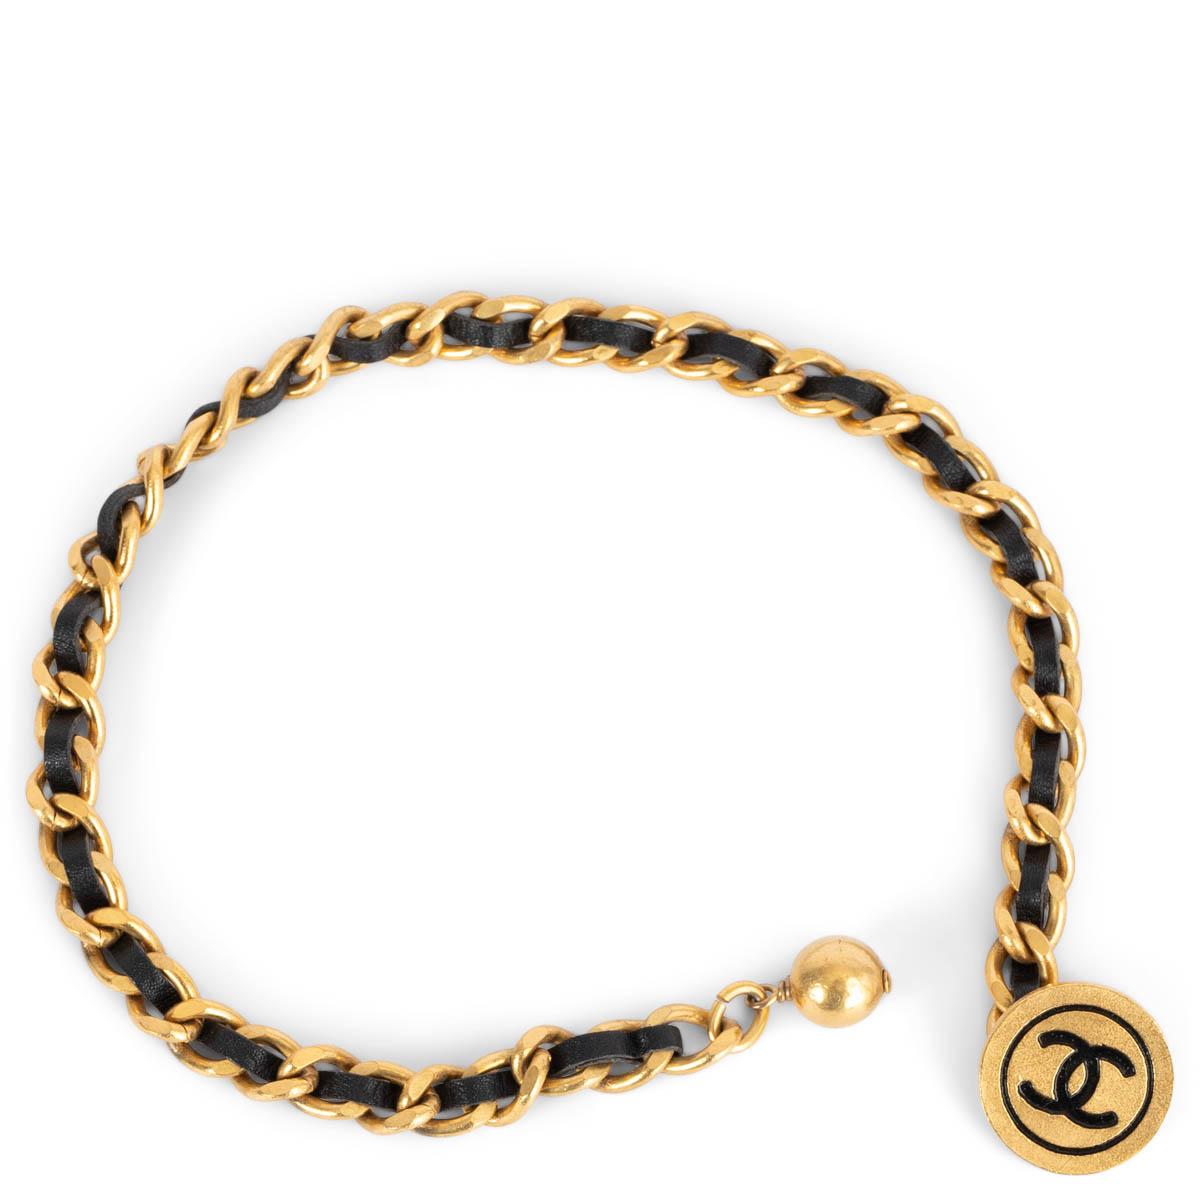 100% authentiques Chanel boutons de manchette extra longs en chaîne plaquée or avec cuir noir. Il comporte un médaillon CC à une extrémité et une balle à l'autre. Ils ont été portés et sont en excellent état. 

1994